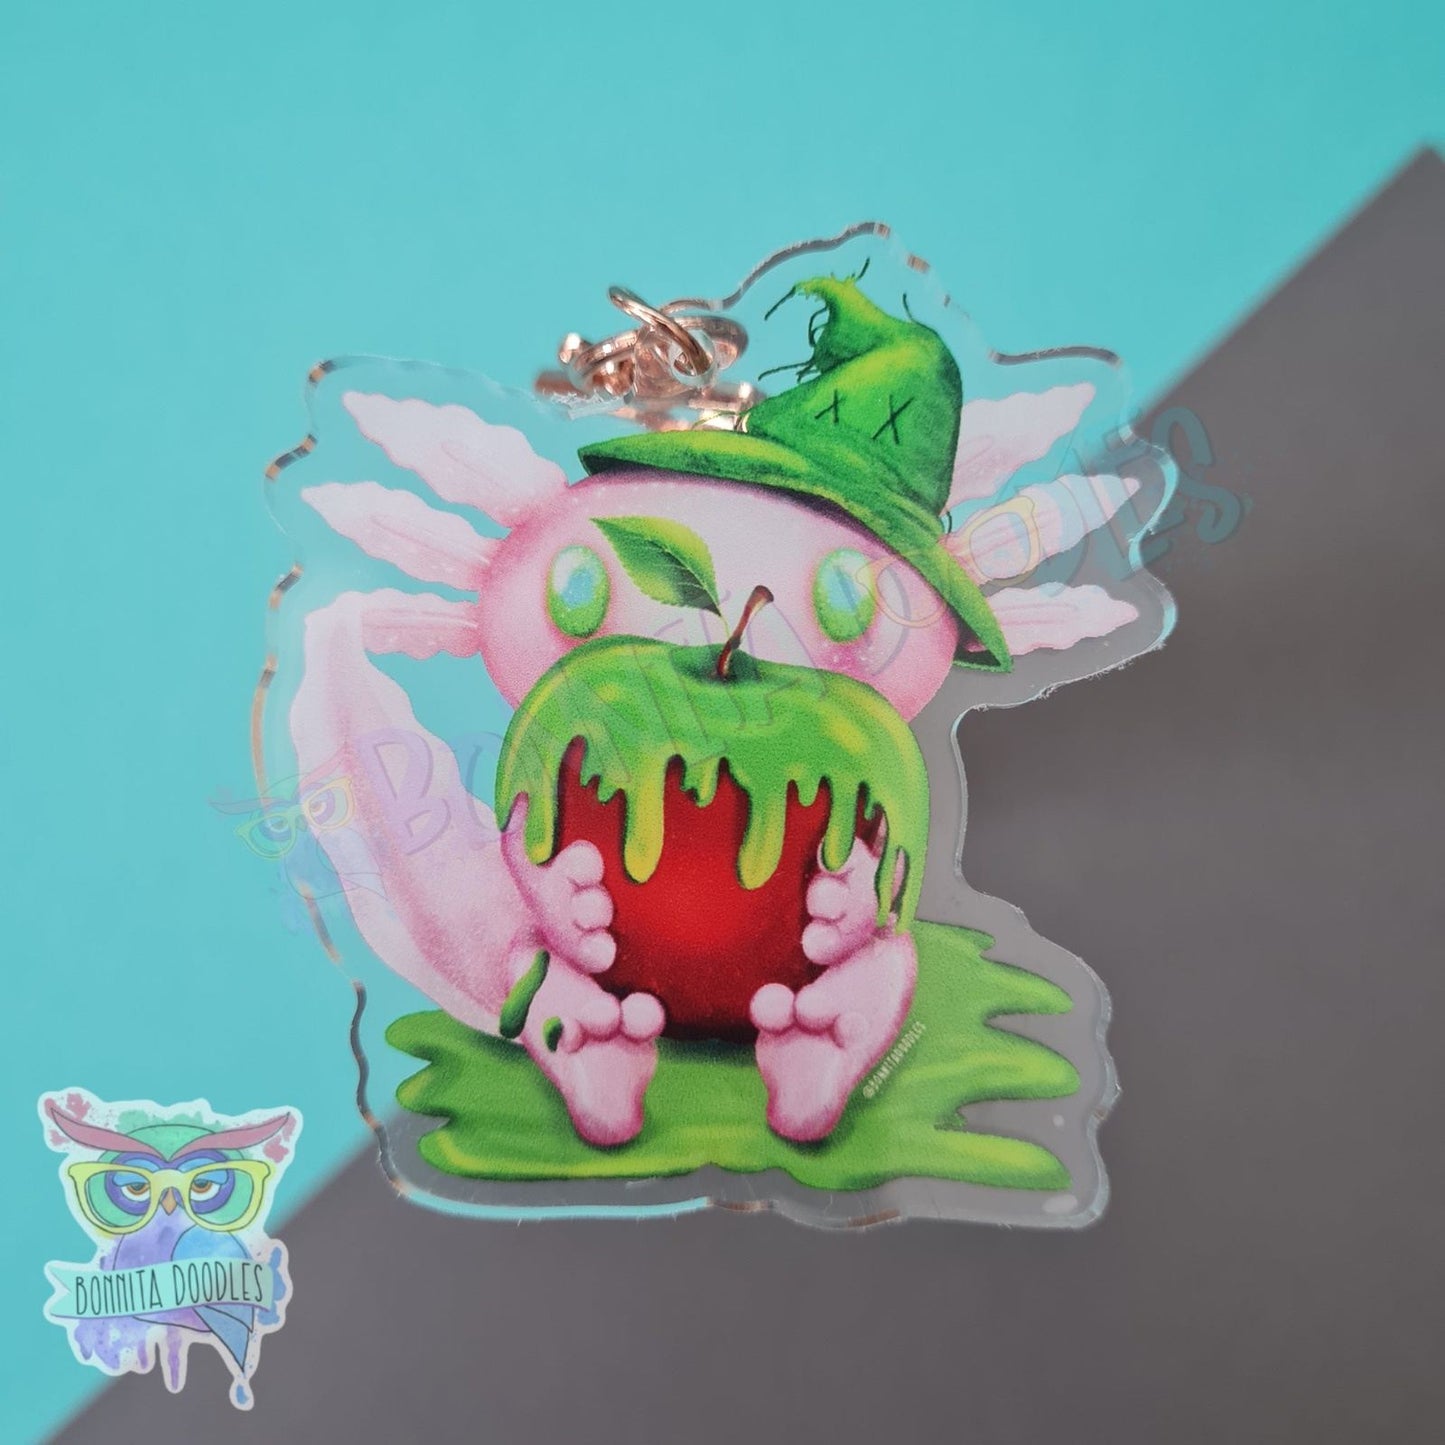 Bones - Poinson apple axolotl keychain / charm. Halloween creepy cute